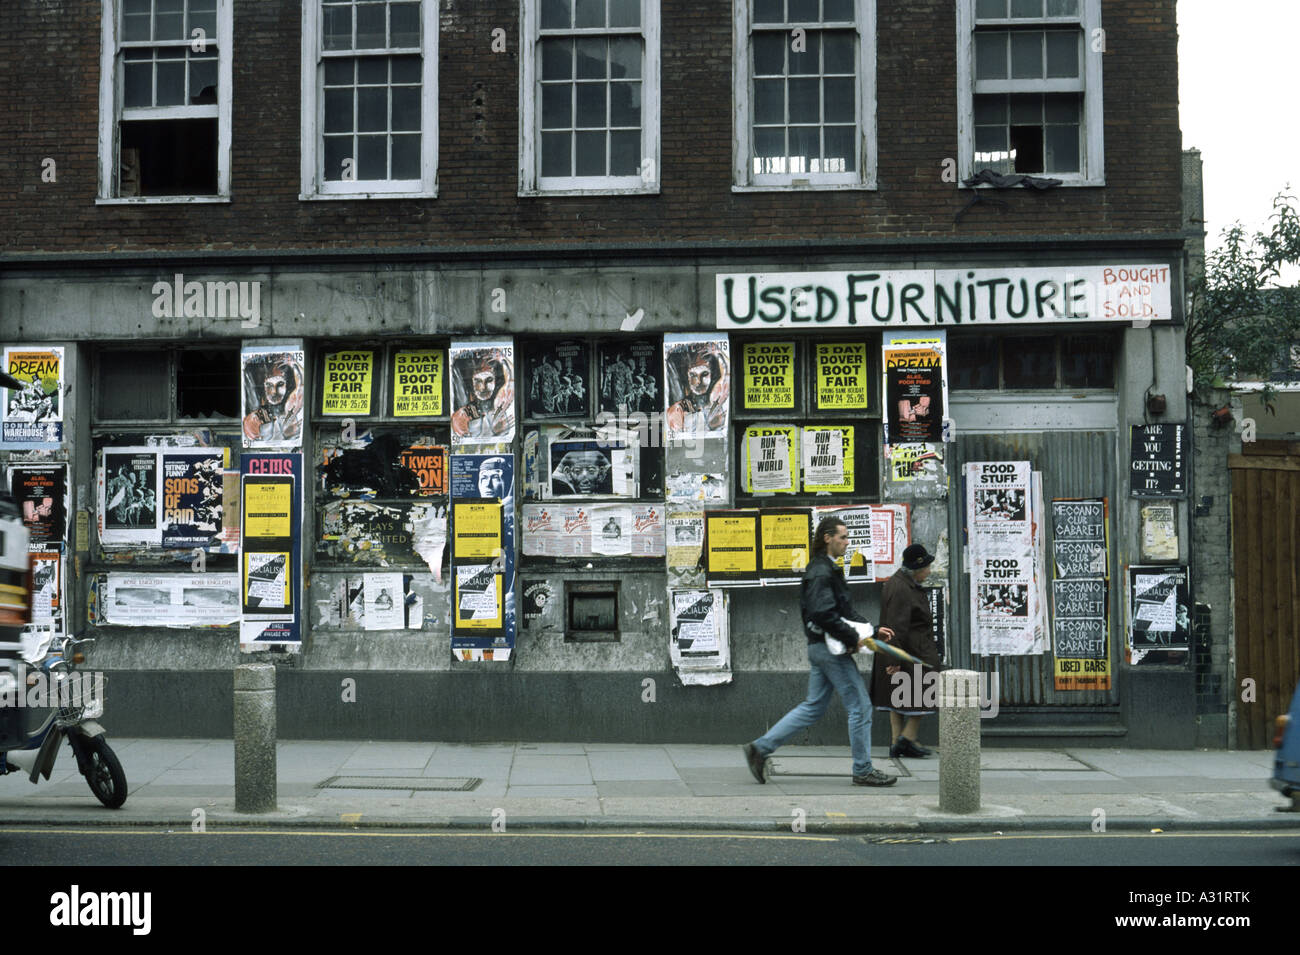 Quartier délabré de Londres avec des affiches et des graffitis jonchant les murs des bâtiments Banque D'Images